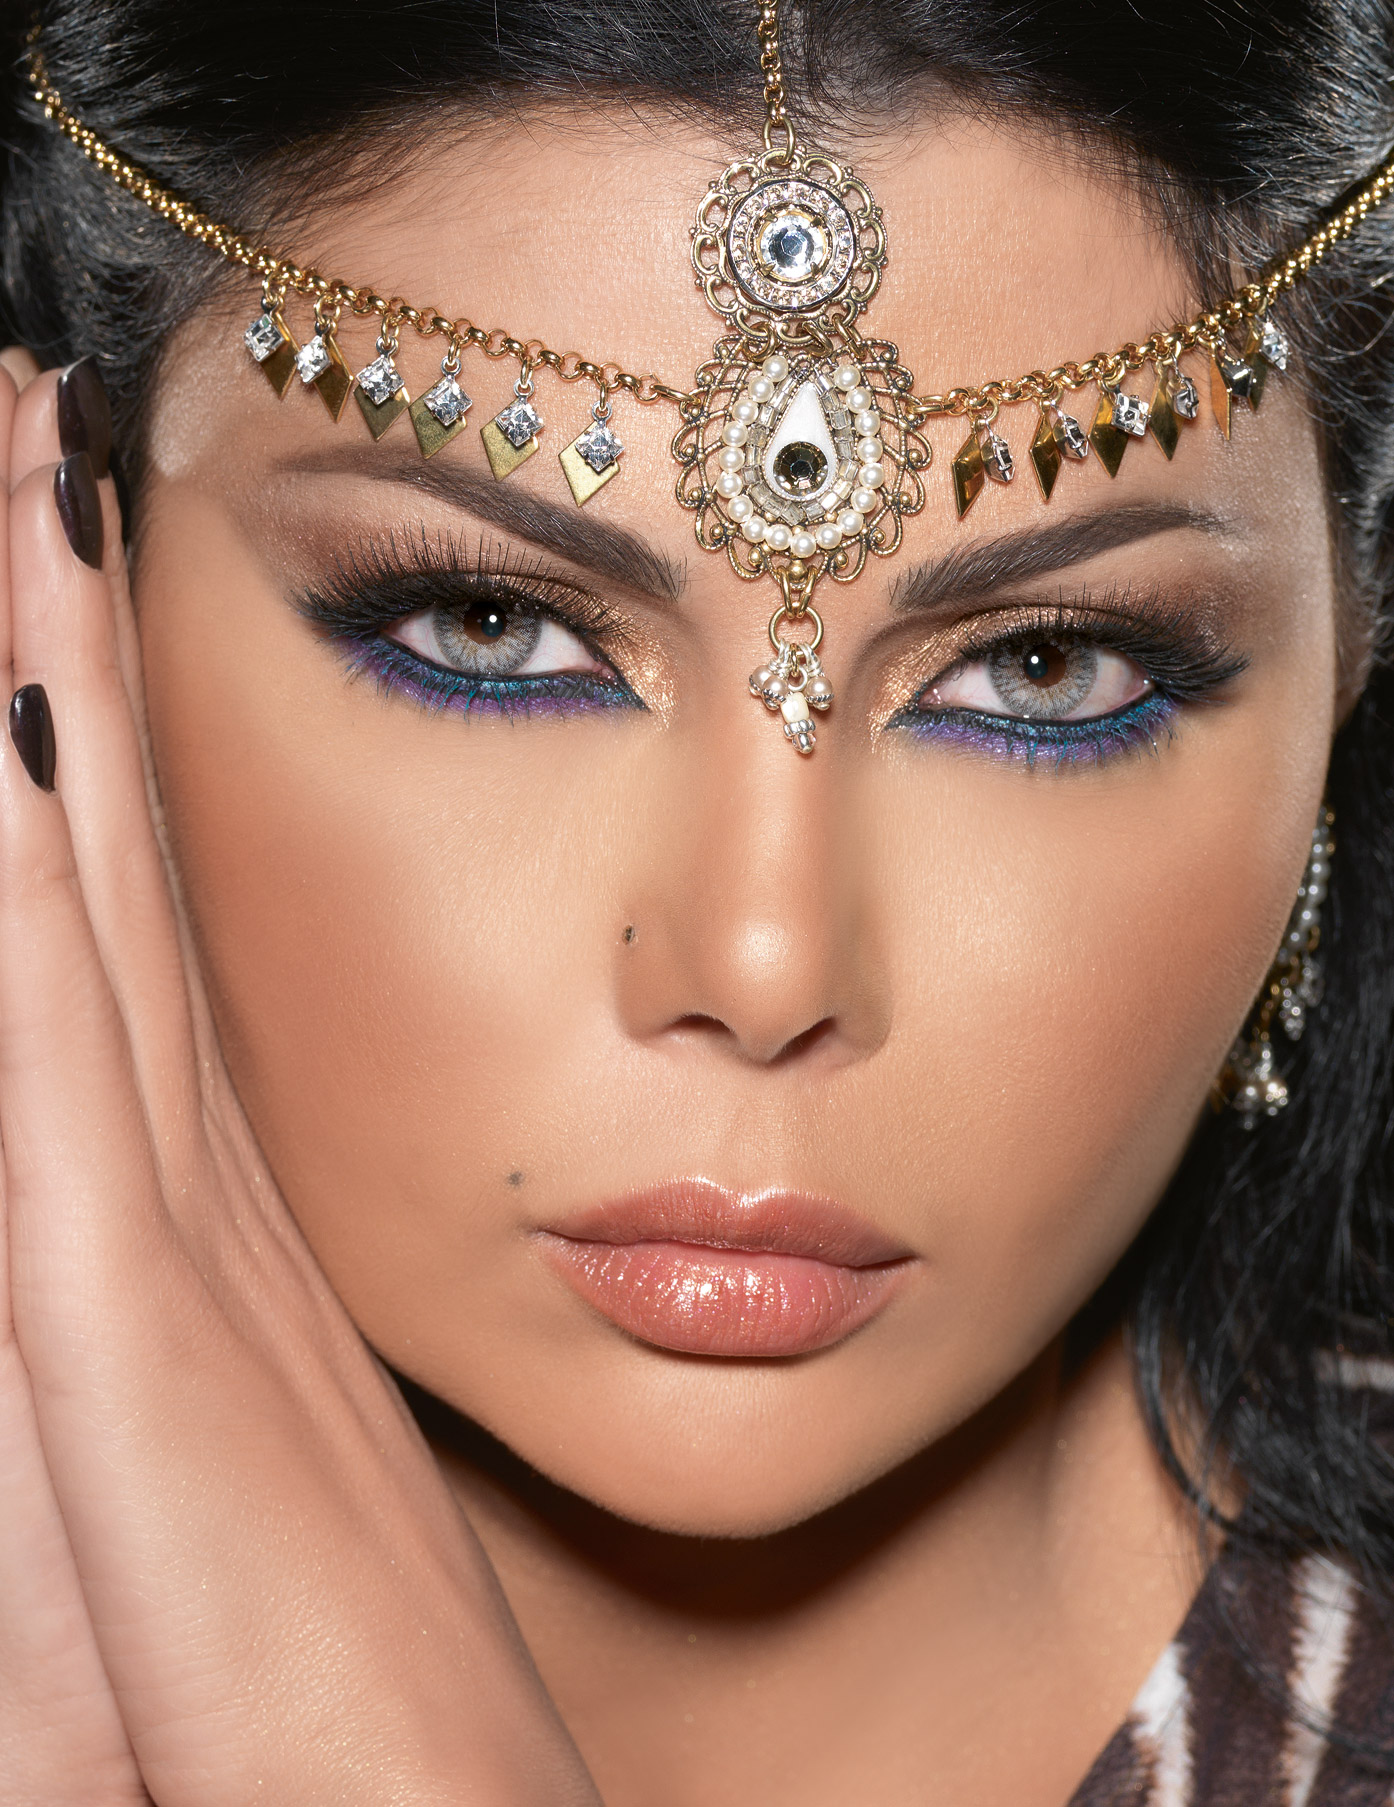 Arabic makeup secrets